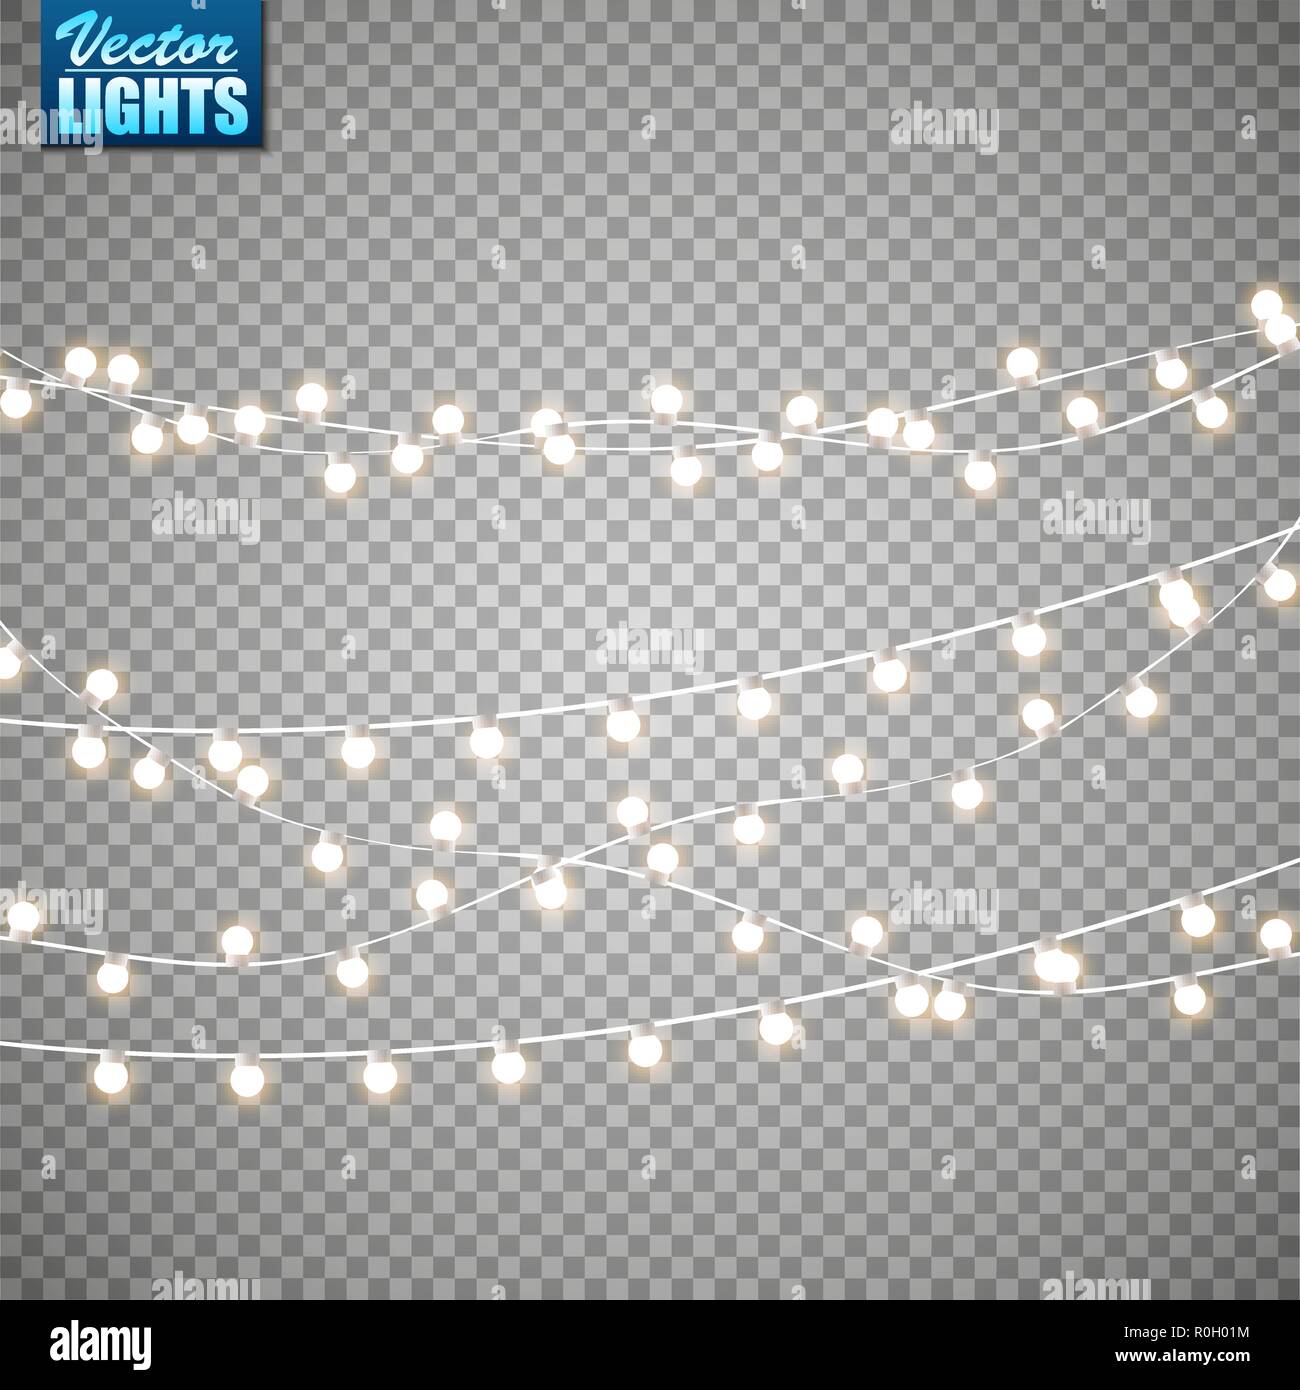 Weihnachtsbeleuchtung isoliert auf transparenten Hintergrund. Satz von Golden xmas leuchtende Girlande. Vector Illustration Stock Vektor